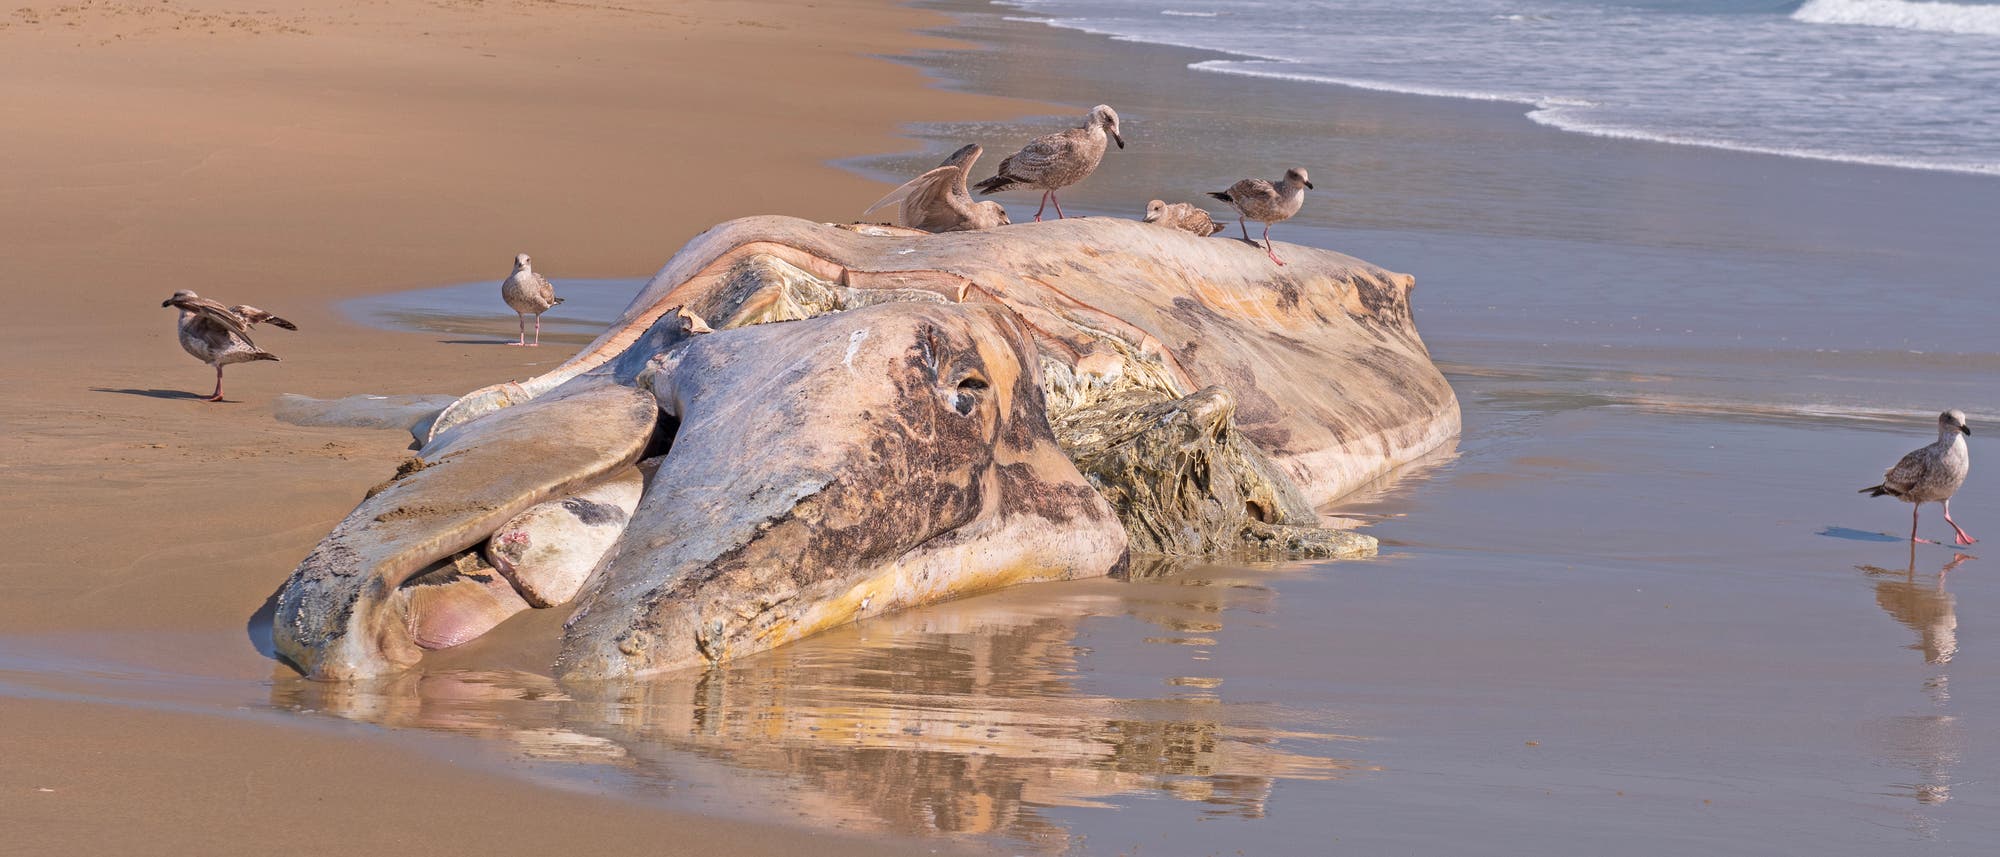 Ein toter, verwesender Grauwald liegt an einem kalifornischen Strand, Wellen laufen ans Ufer, Möwen fressen am Kadaver